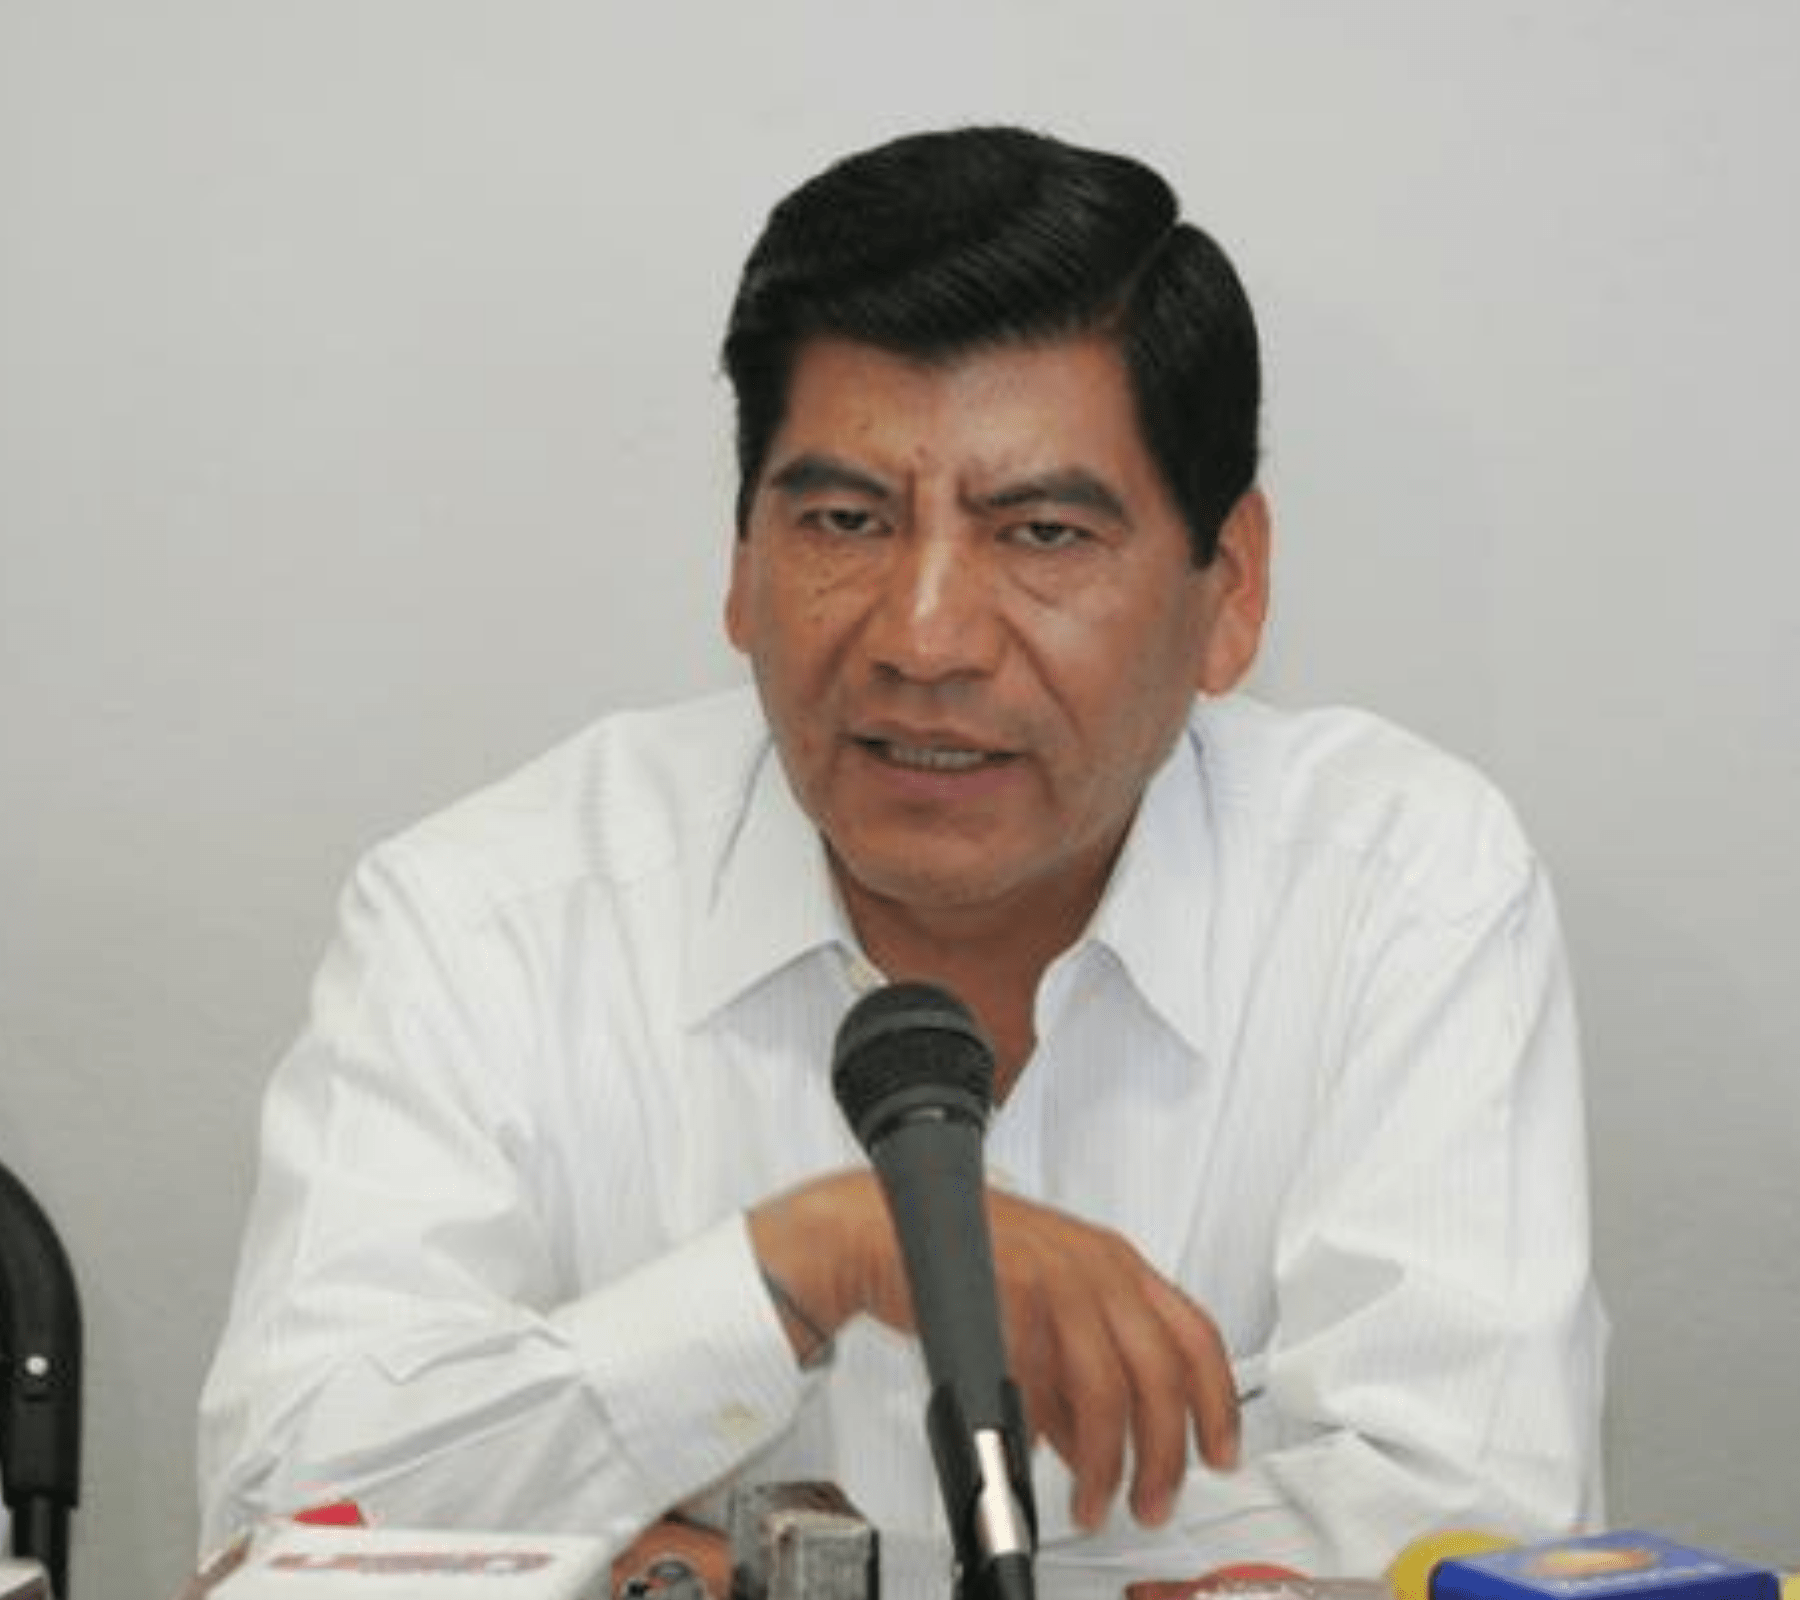 Mario Martín Puebla